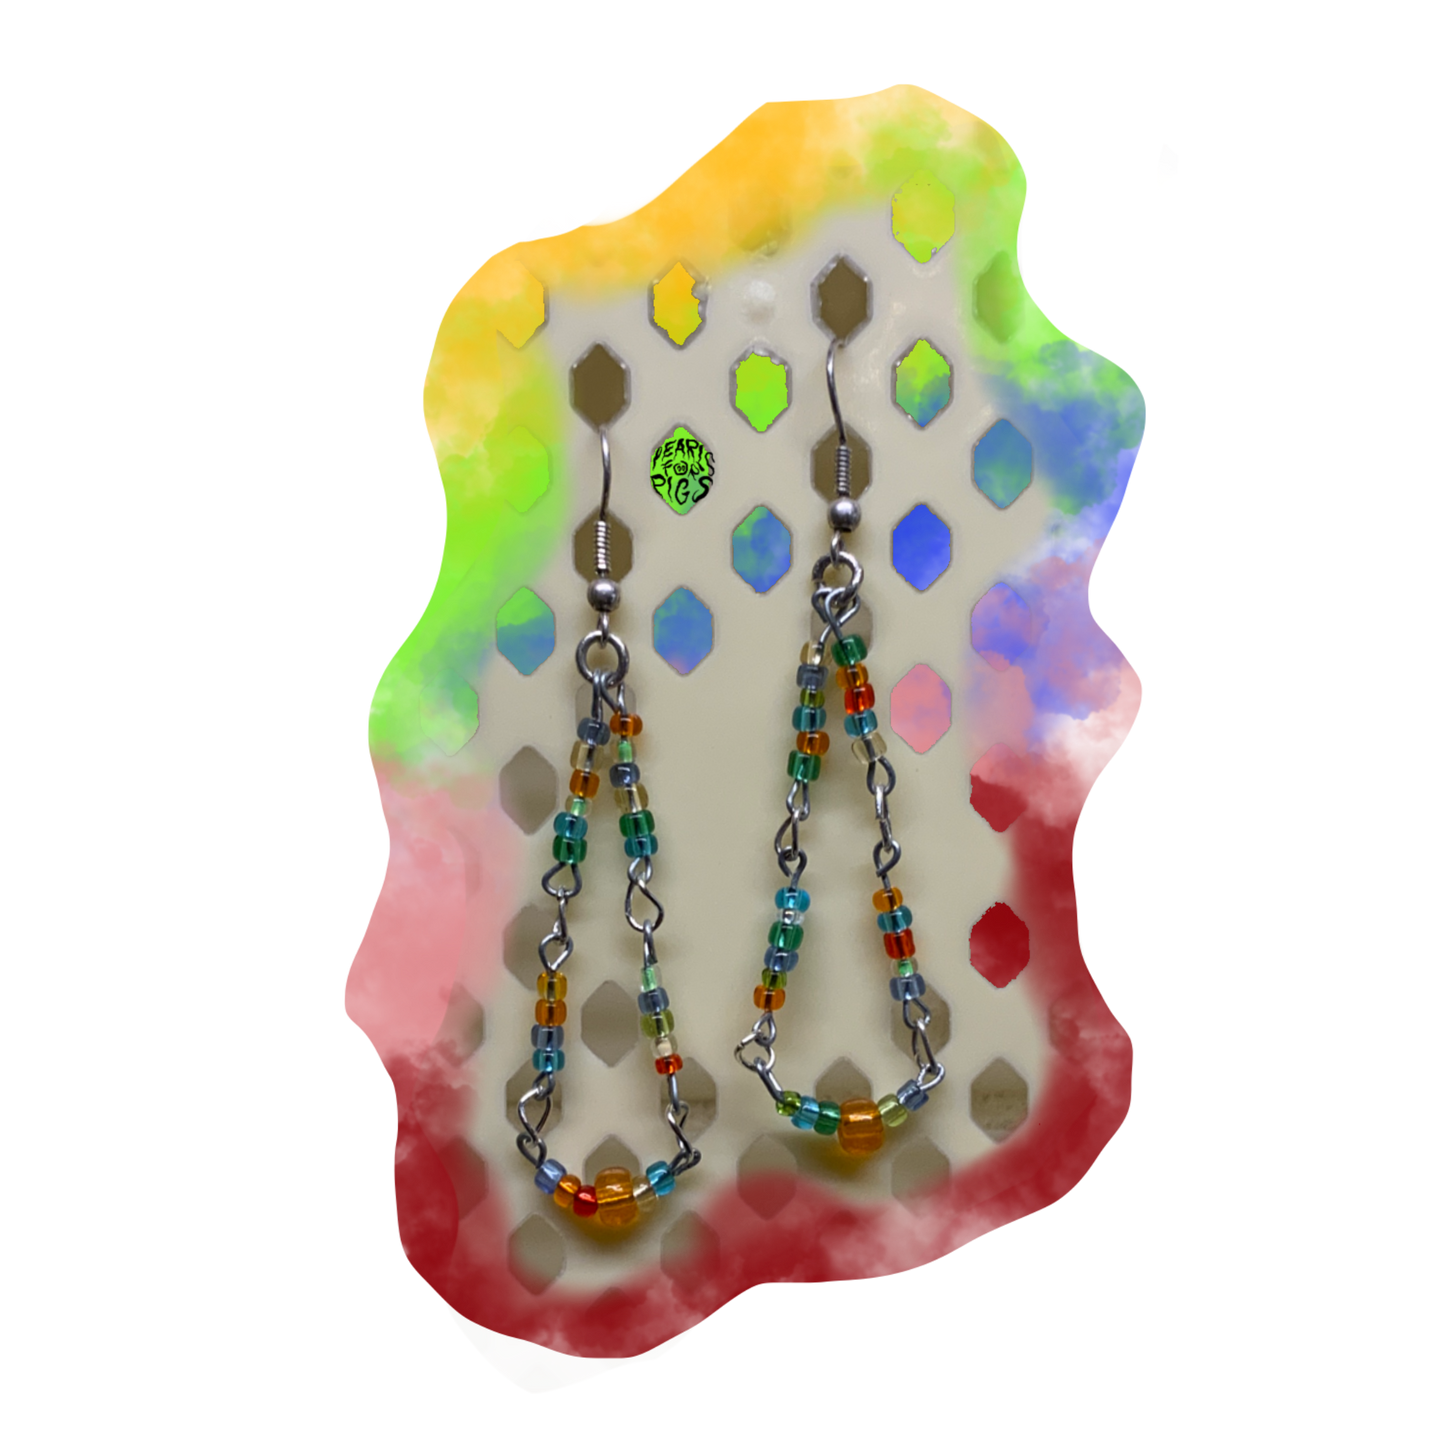 Rainbow dangly earrings